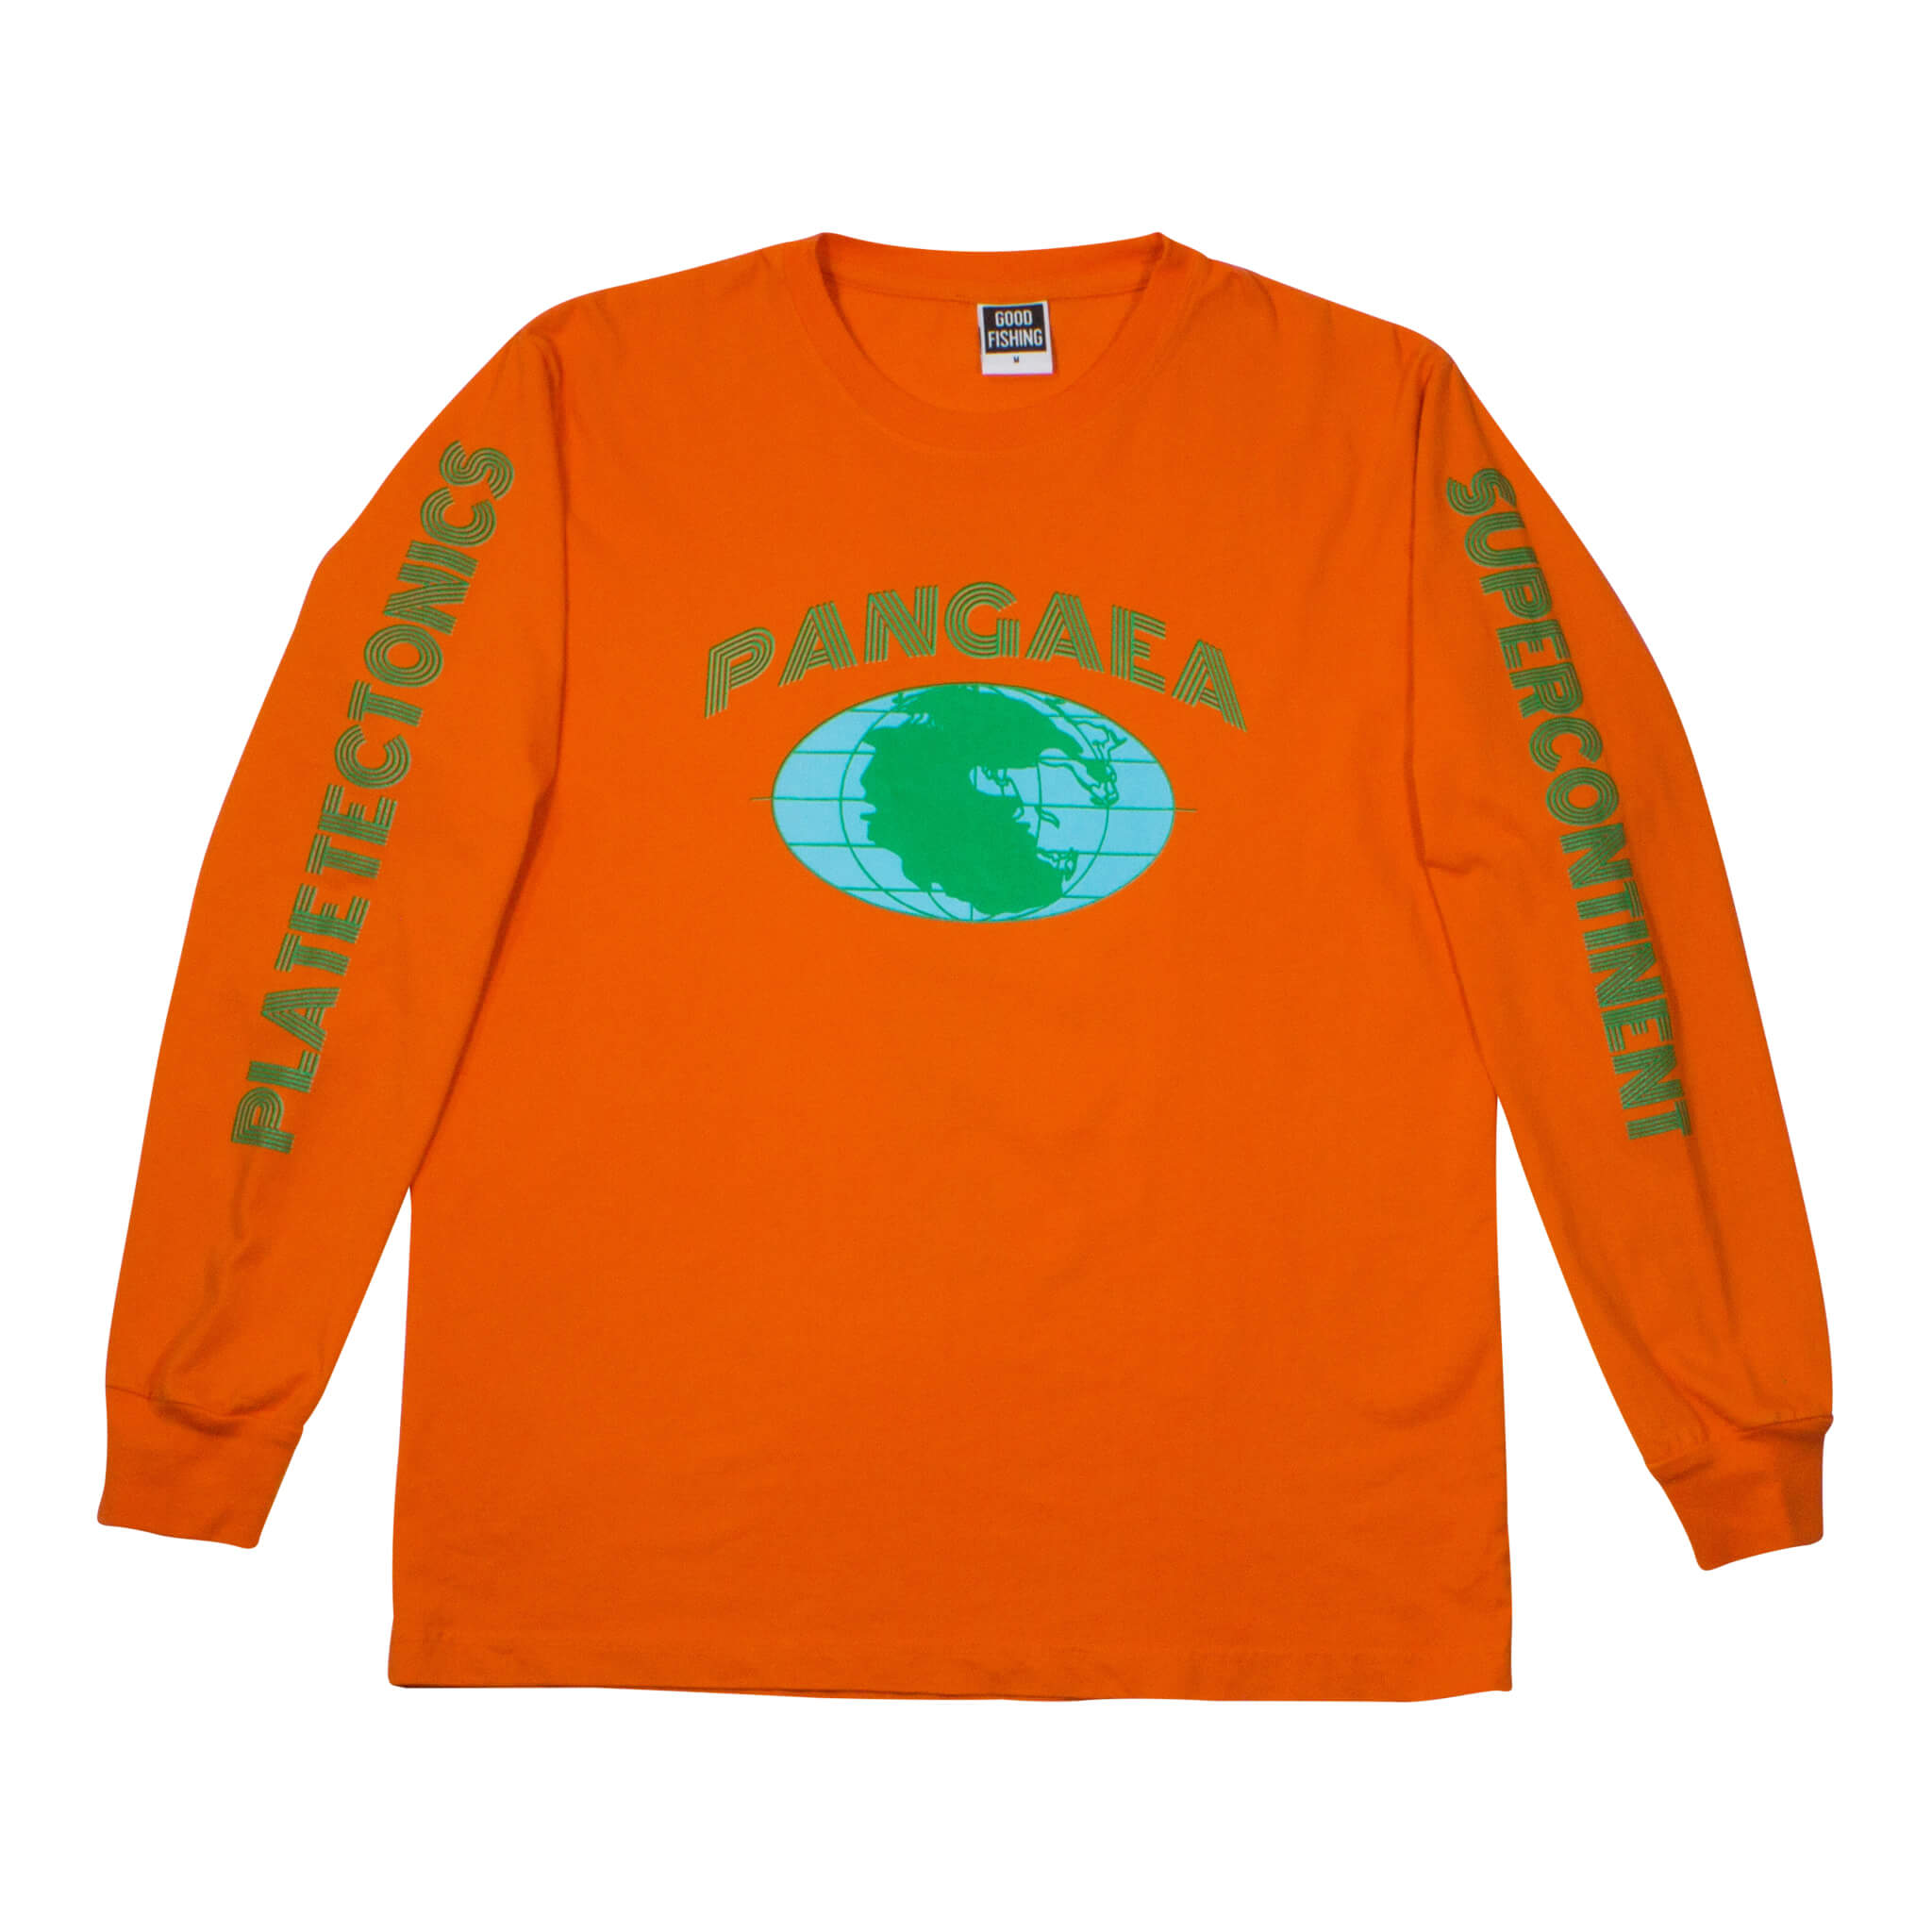 Good_Fishing_Pangaea_Organic_Cotton_Long_Sleeve_T-Shirt_Hazard_Orange_3.jpg